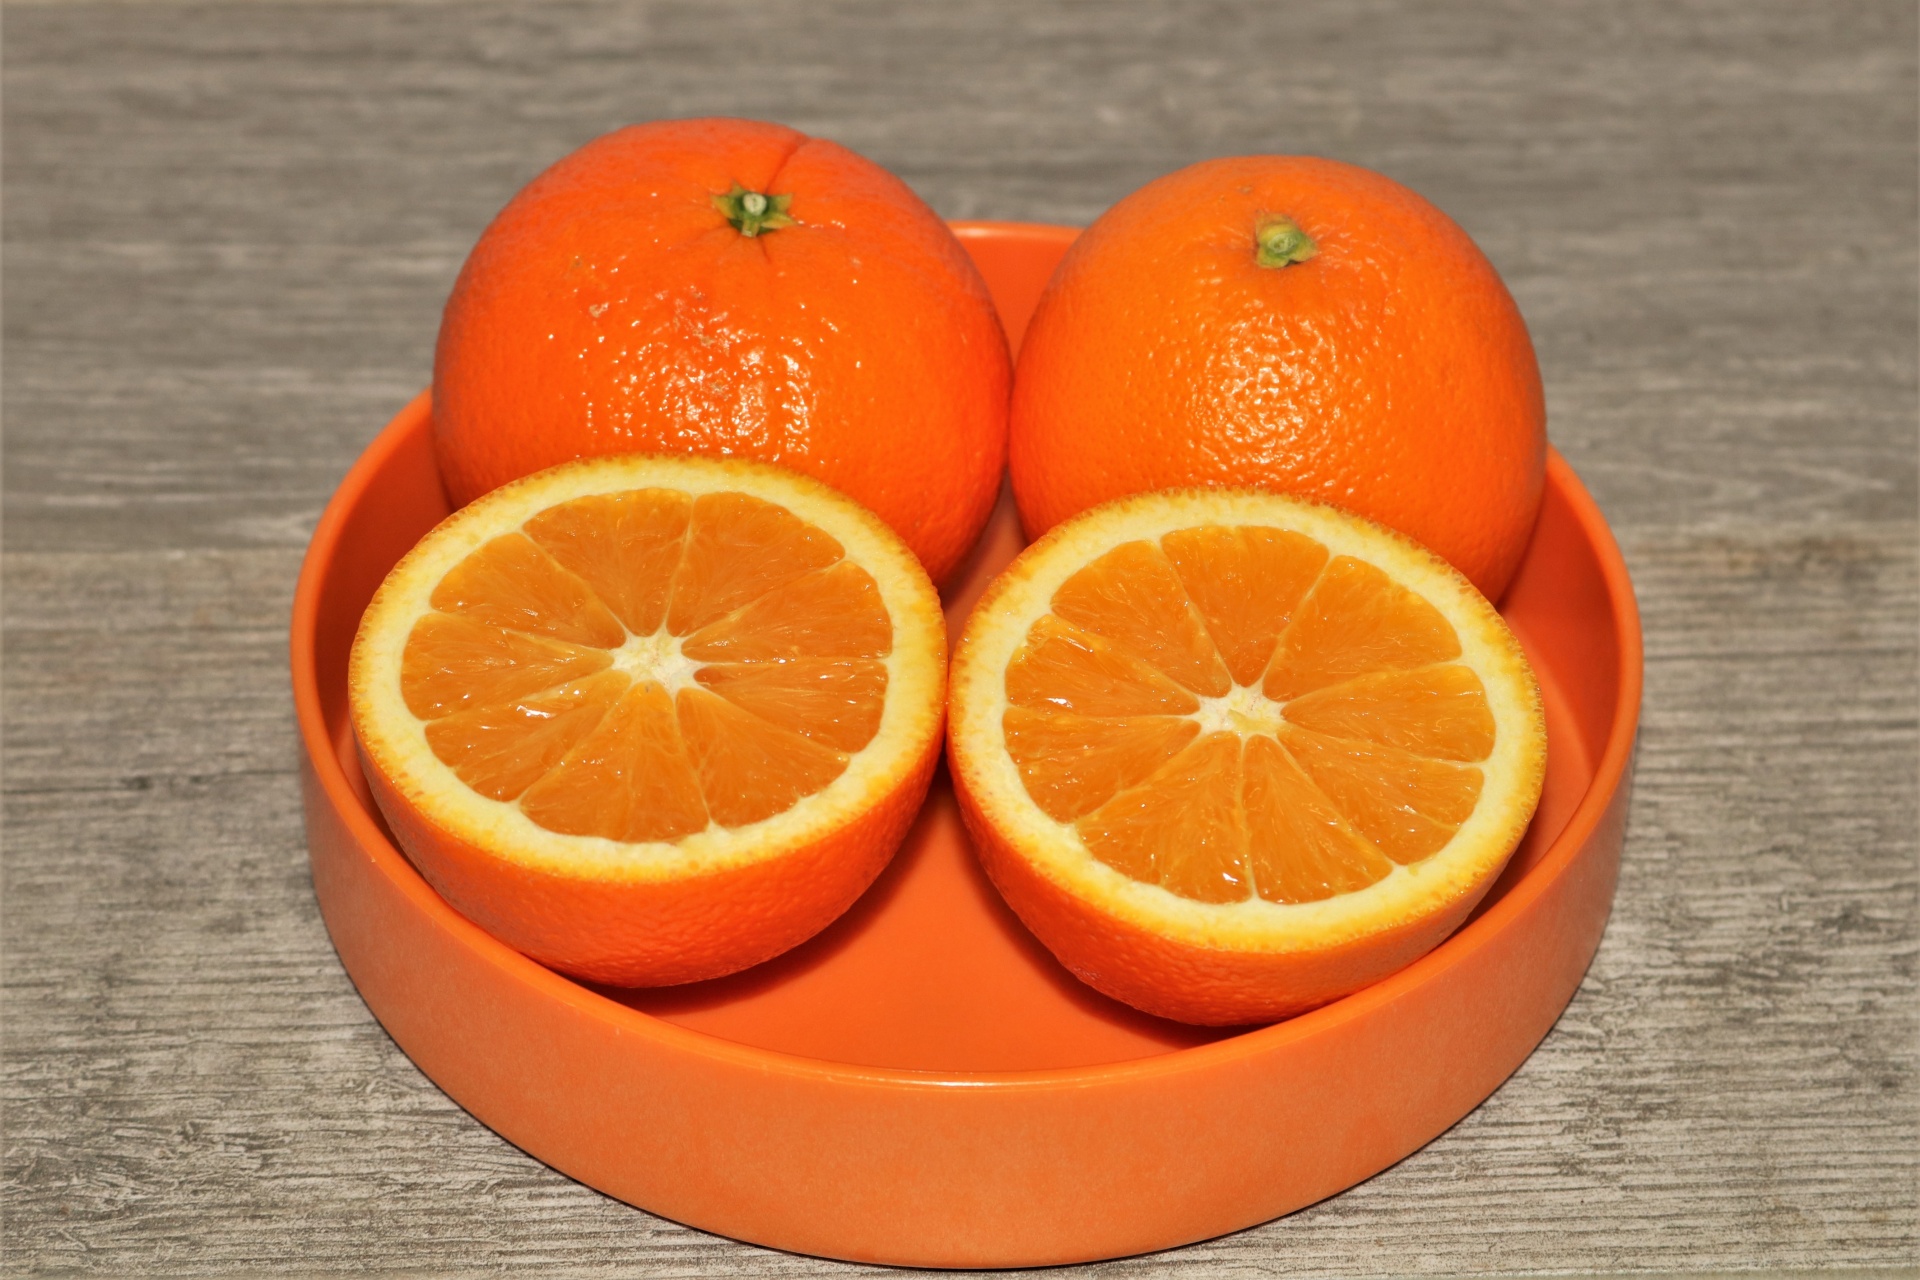 Oranges In Orange Bowl